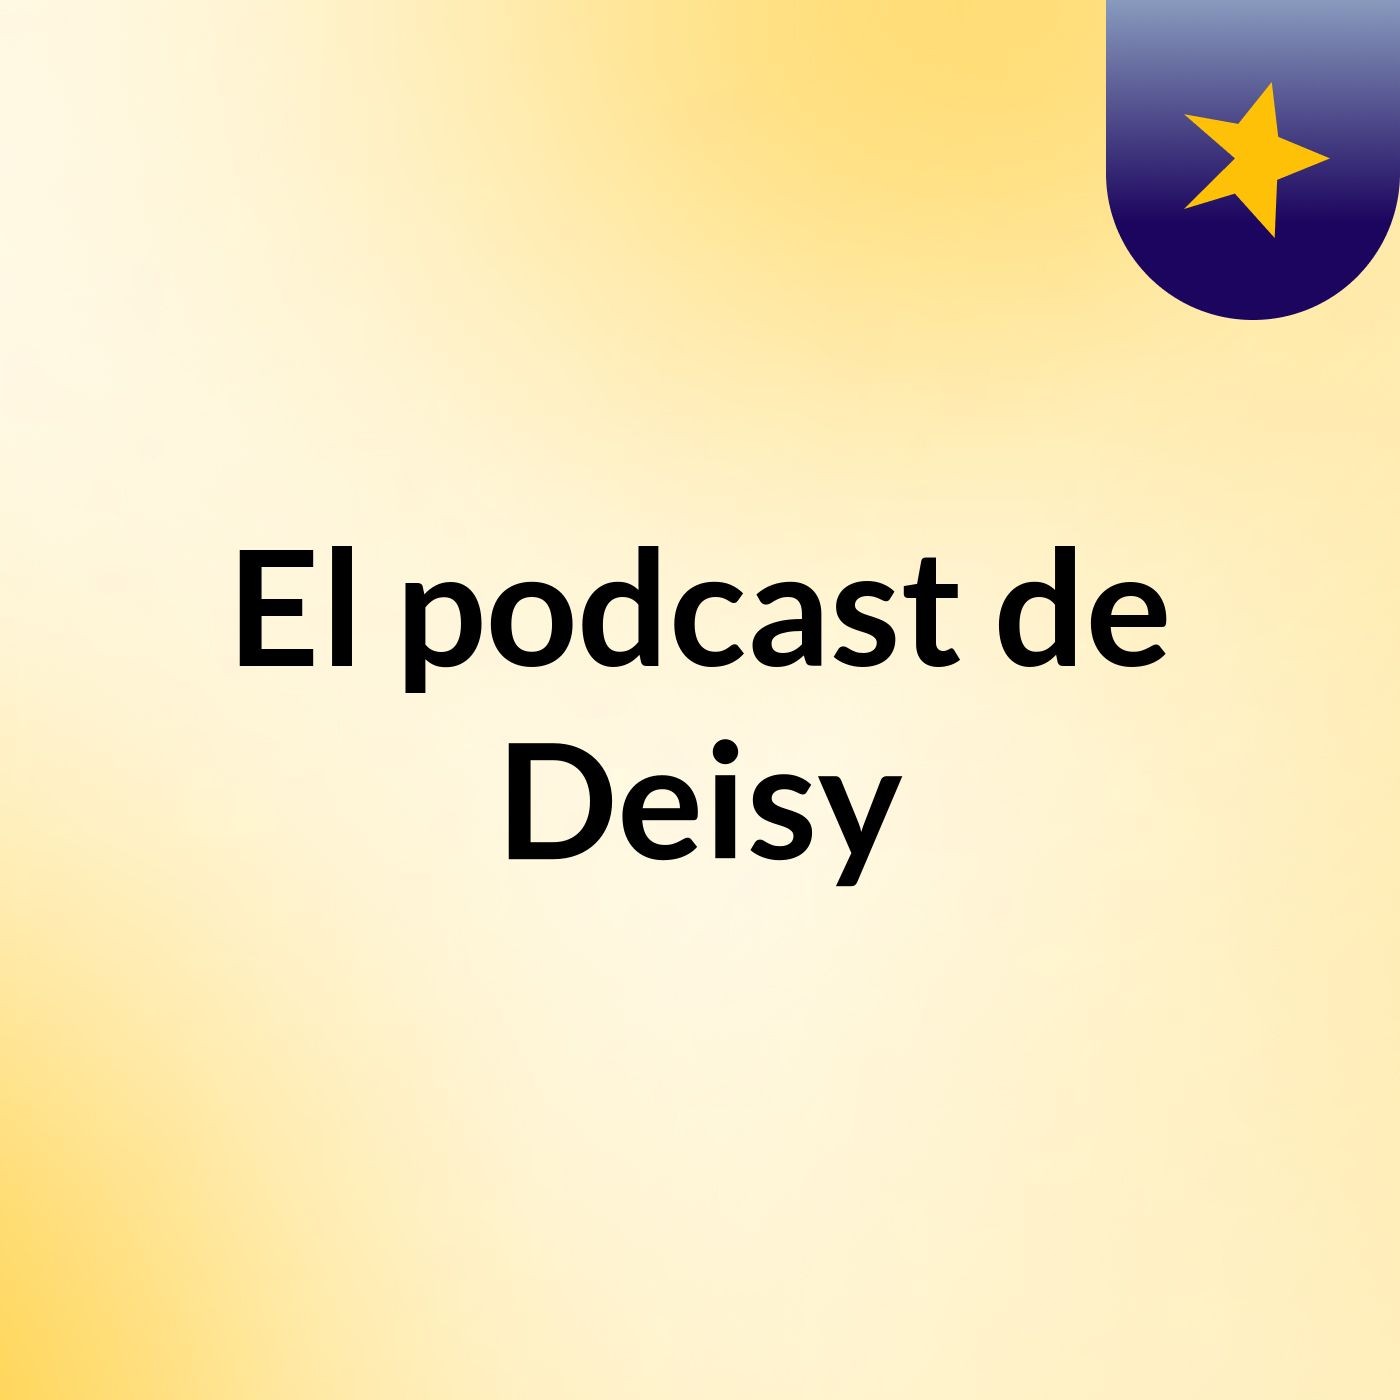 El podcast de Deisy